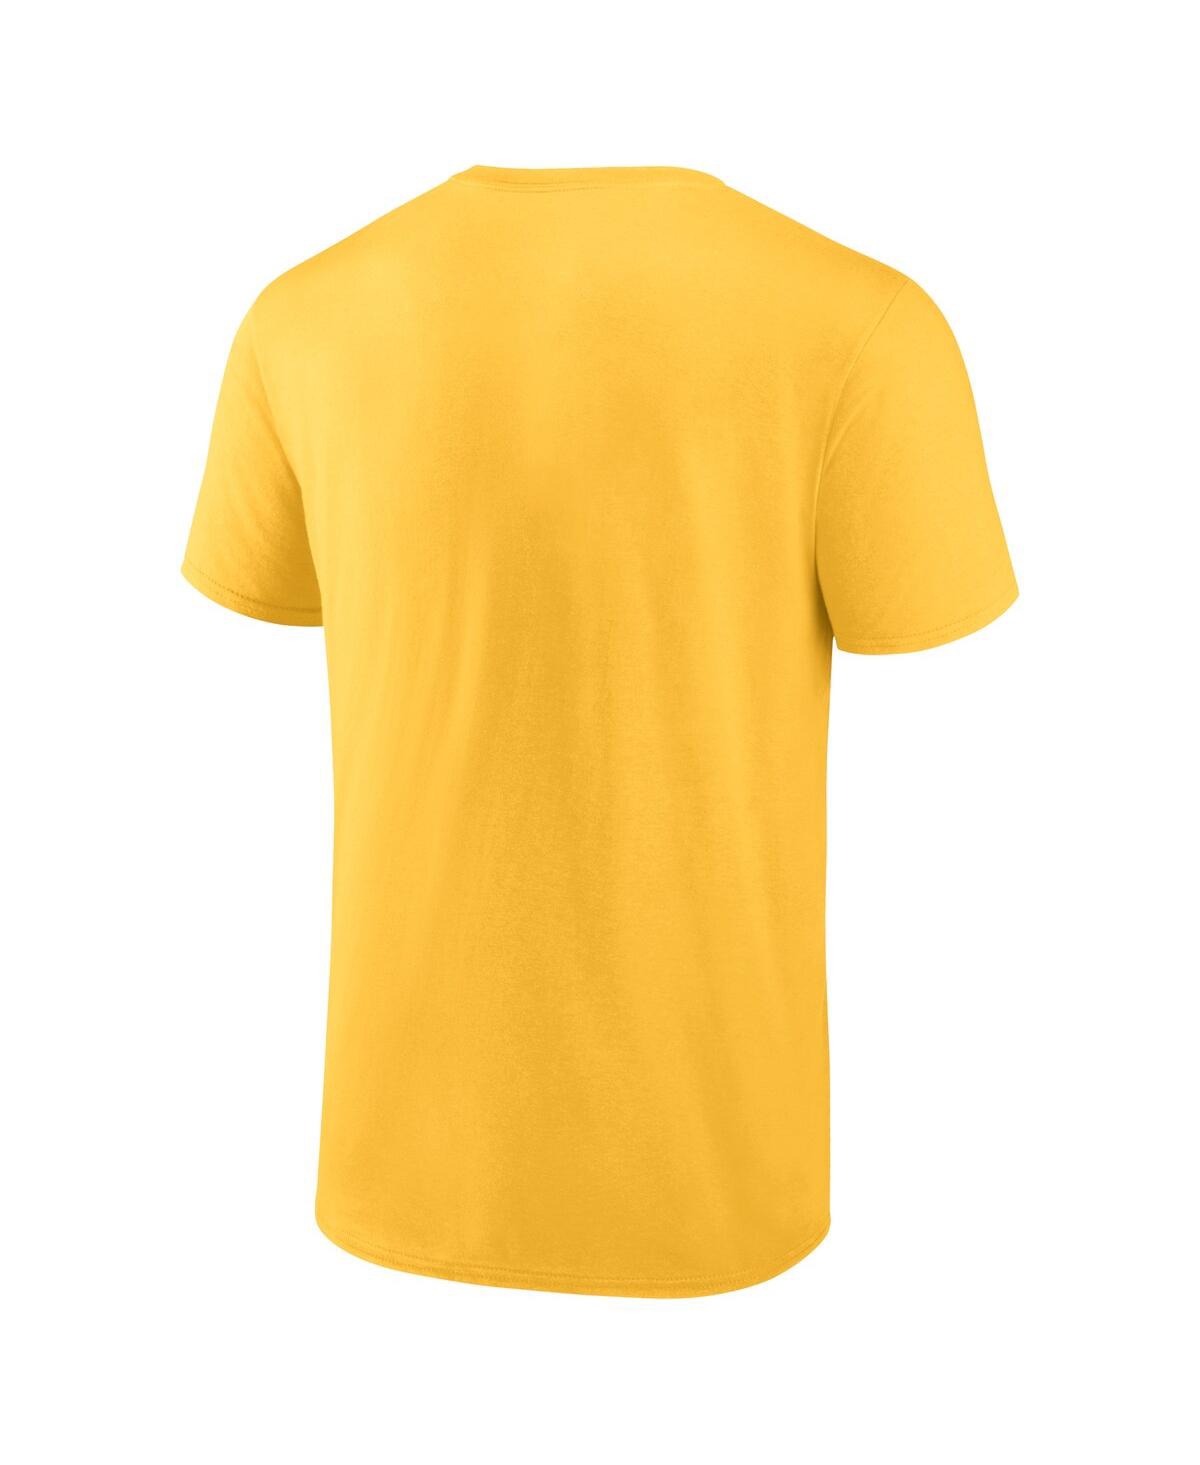 Shop Fanatics Men's  Gold Cal Bears Campus T-shirt